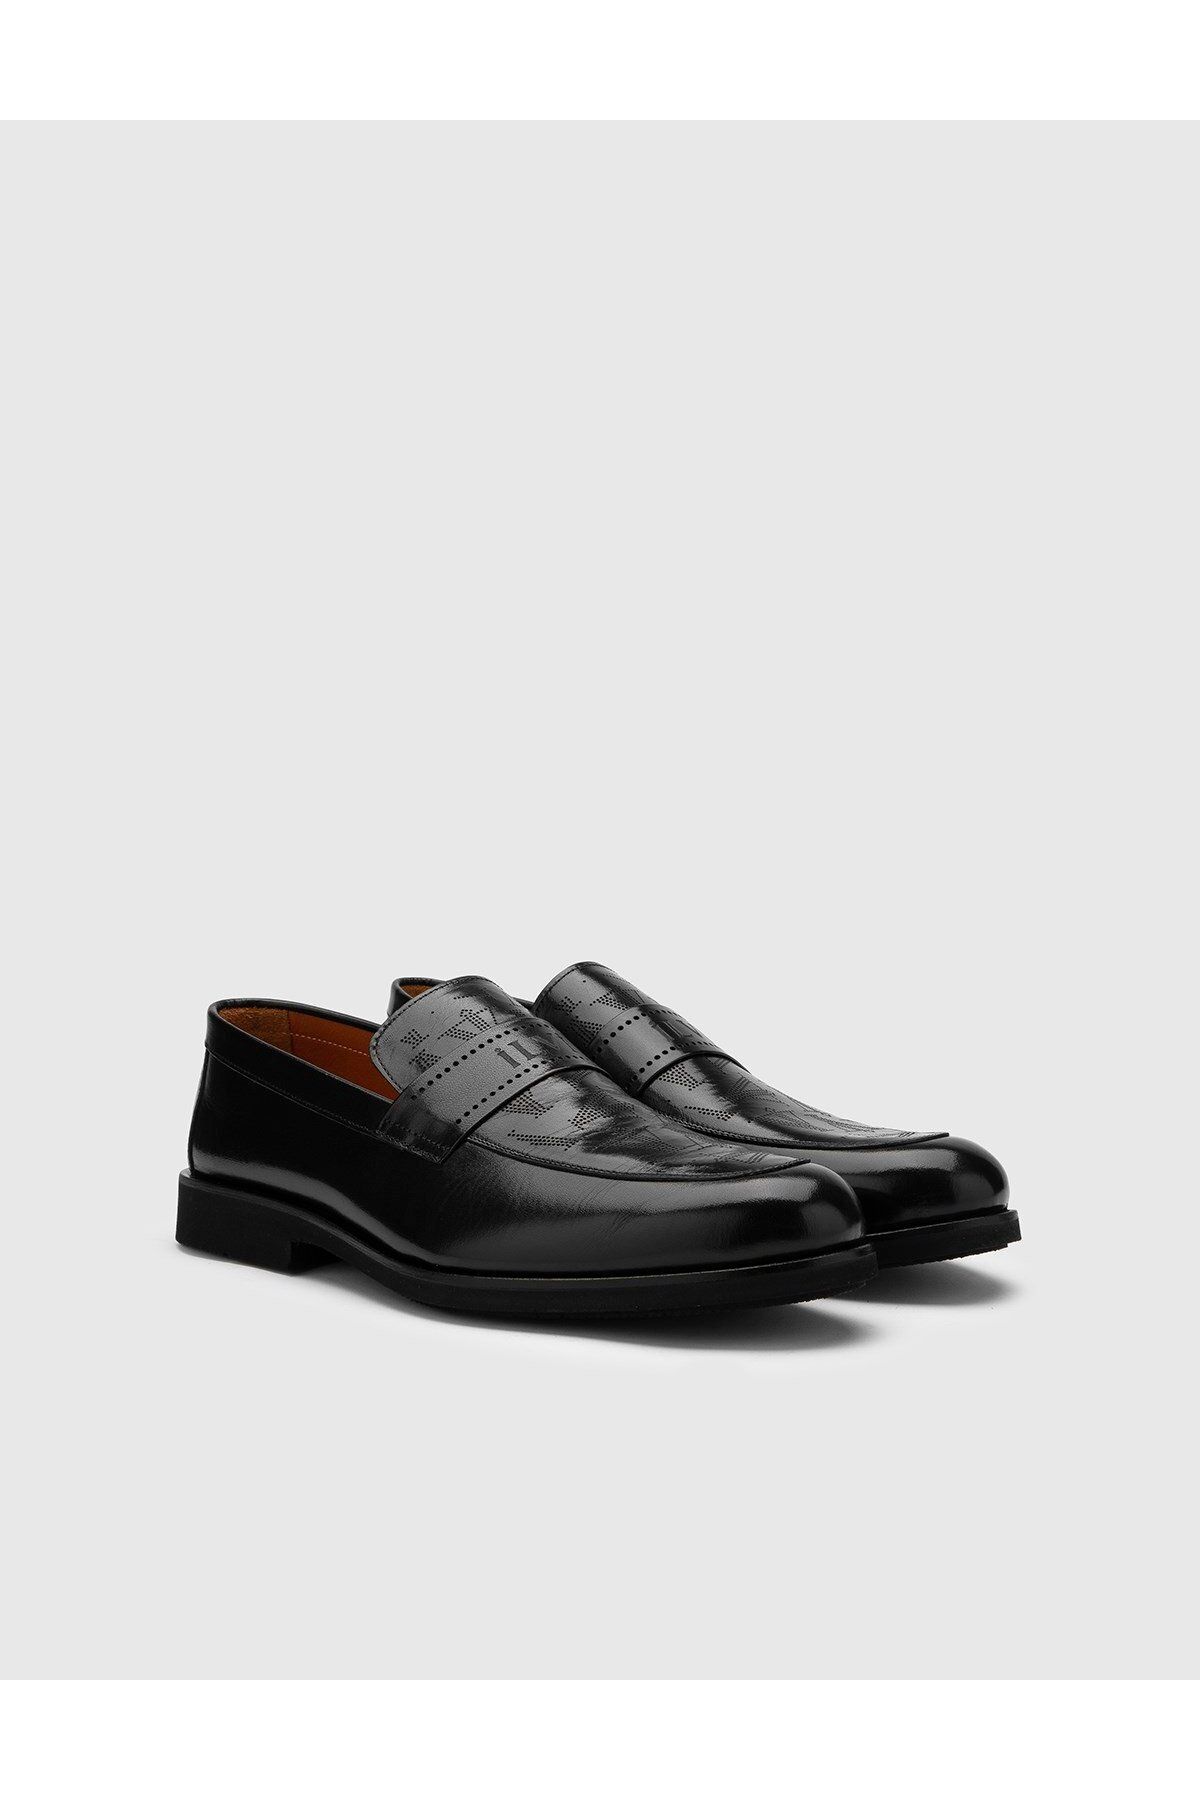 İlvi Aimil Hakiki Buffalo Deri Erkek Siyah Klasik Ayakkabı